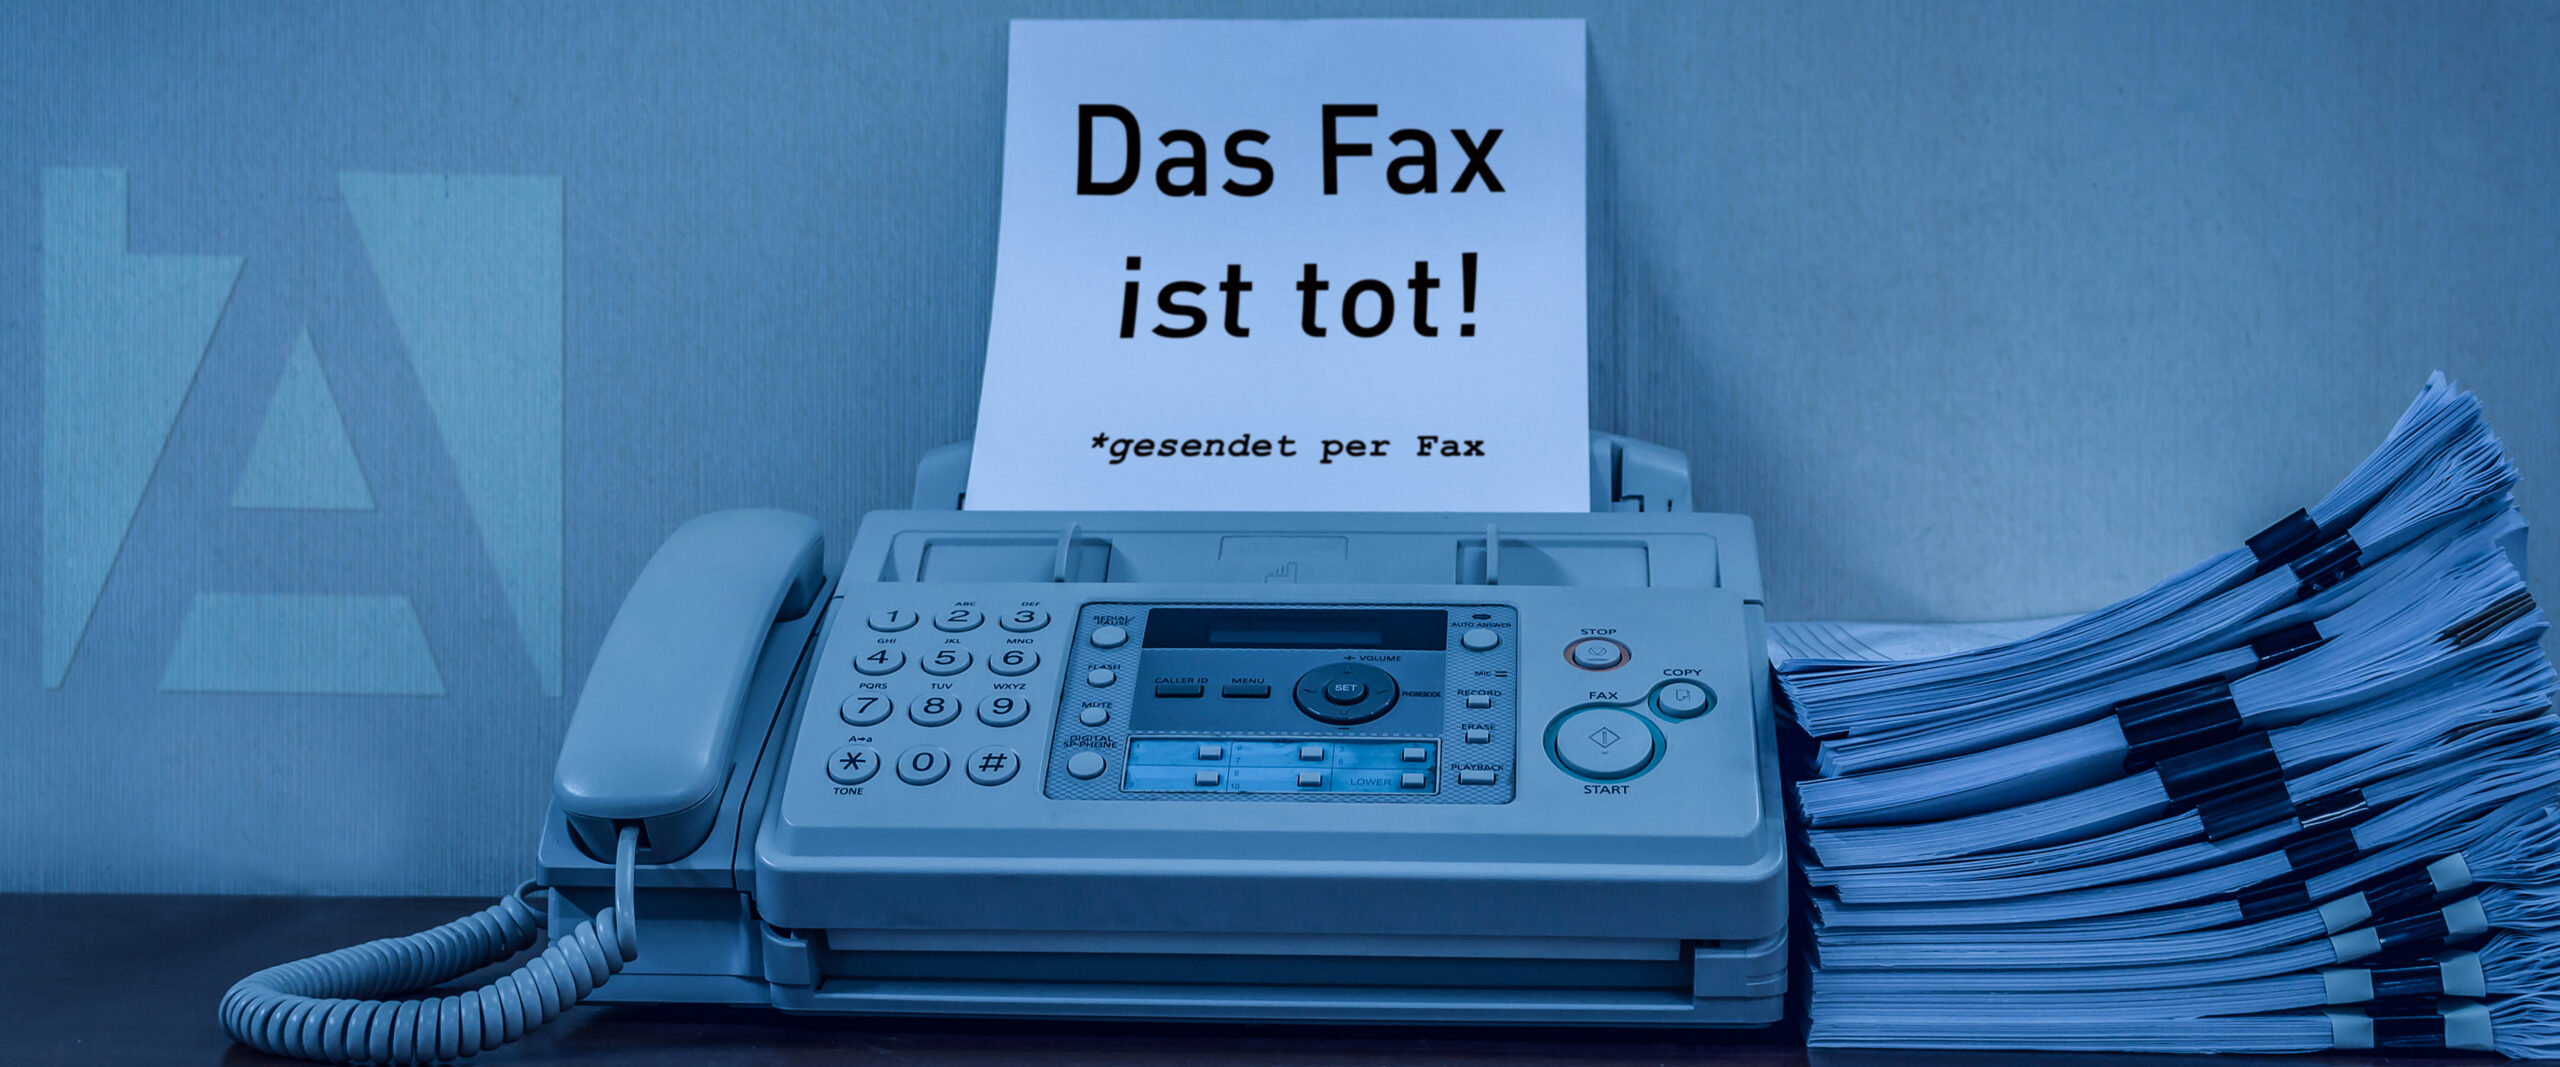 Fax ist tot! Es lebe das Fax?